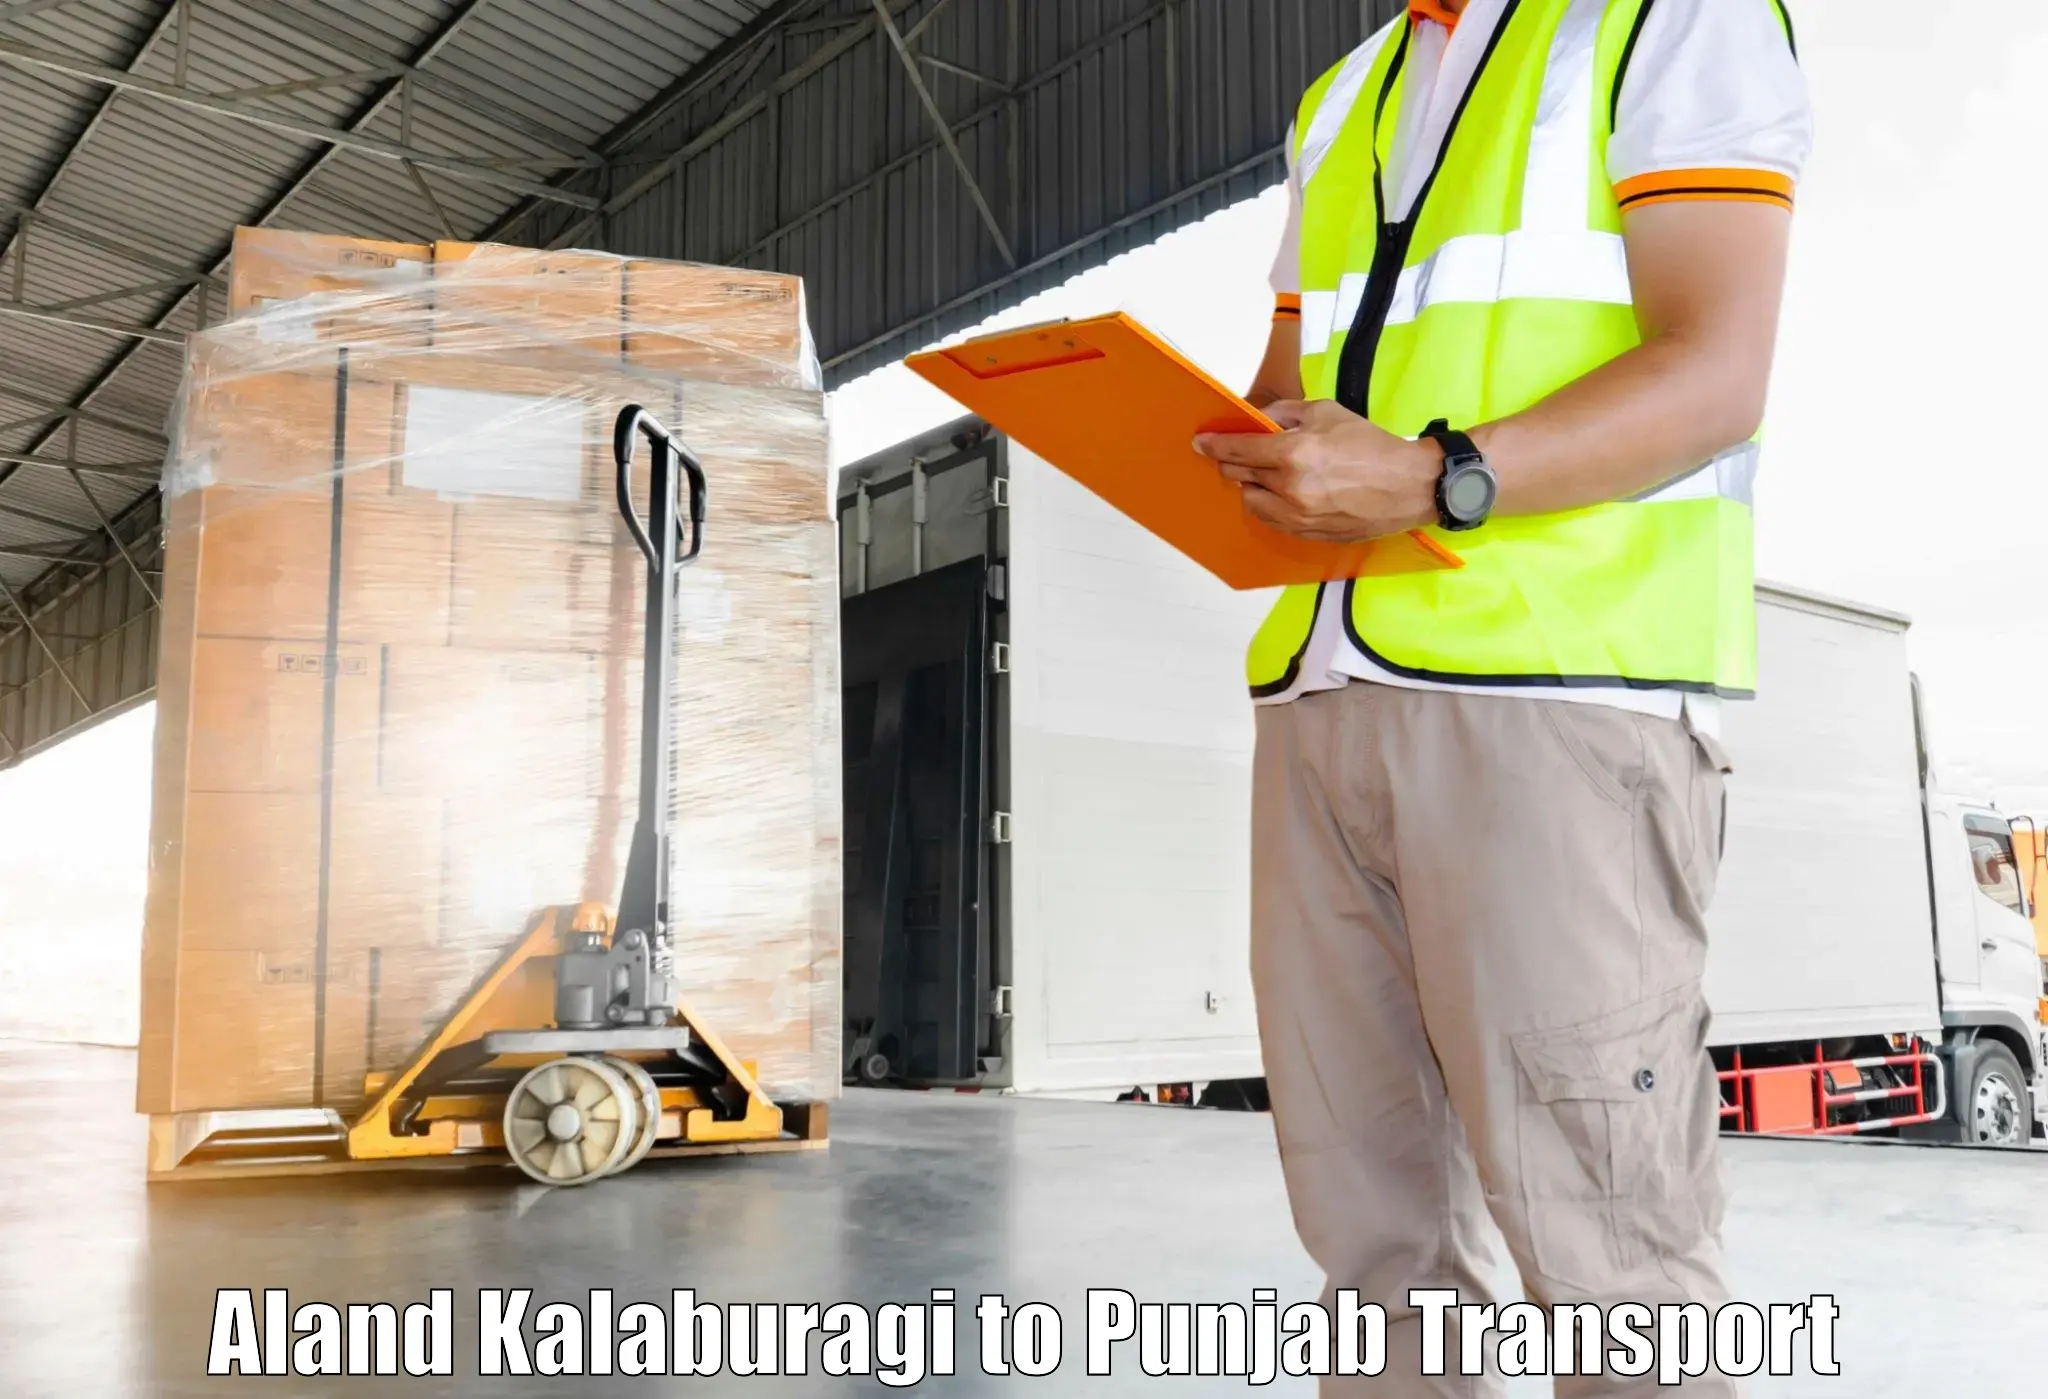 Land transport services Aland Kalaburagi to Dera Bassi